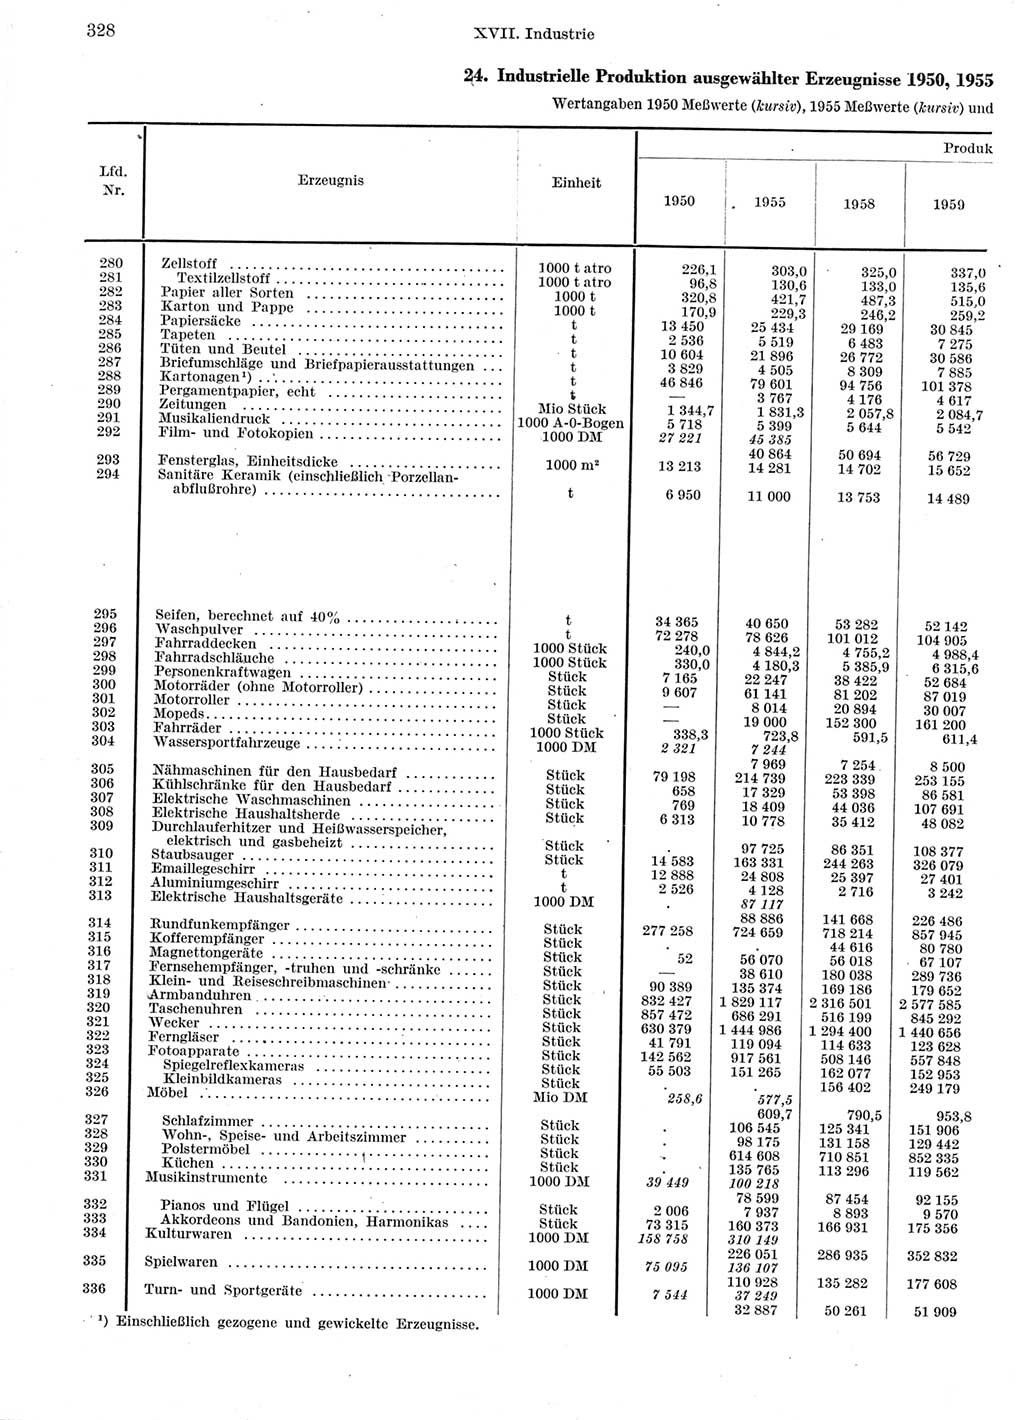 Statistisches Jahrbuch der Deutschen Demokratischen Republik (DDR) 1960-1961, Seite 328 (Stat. Jb. DDR 1960-1961, S. 328)